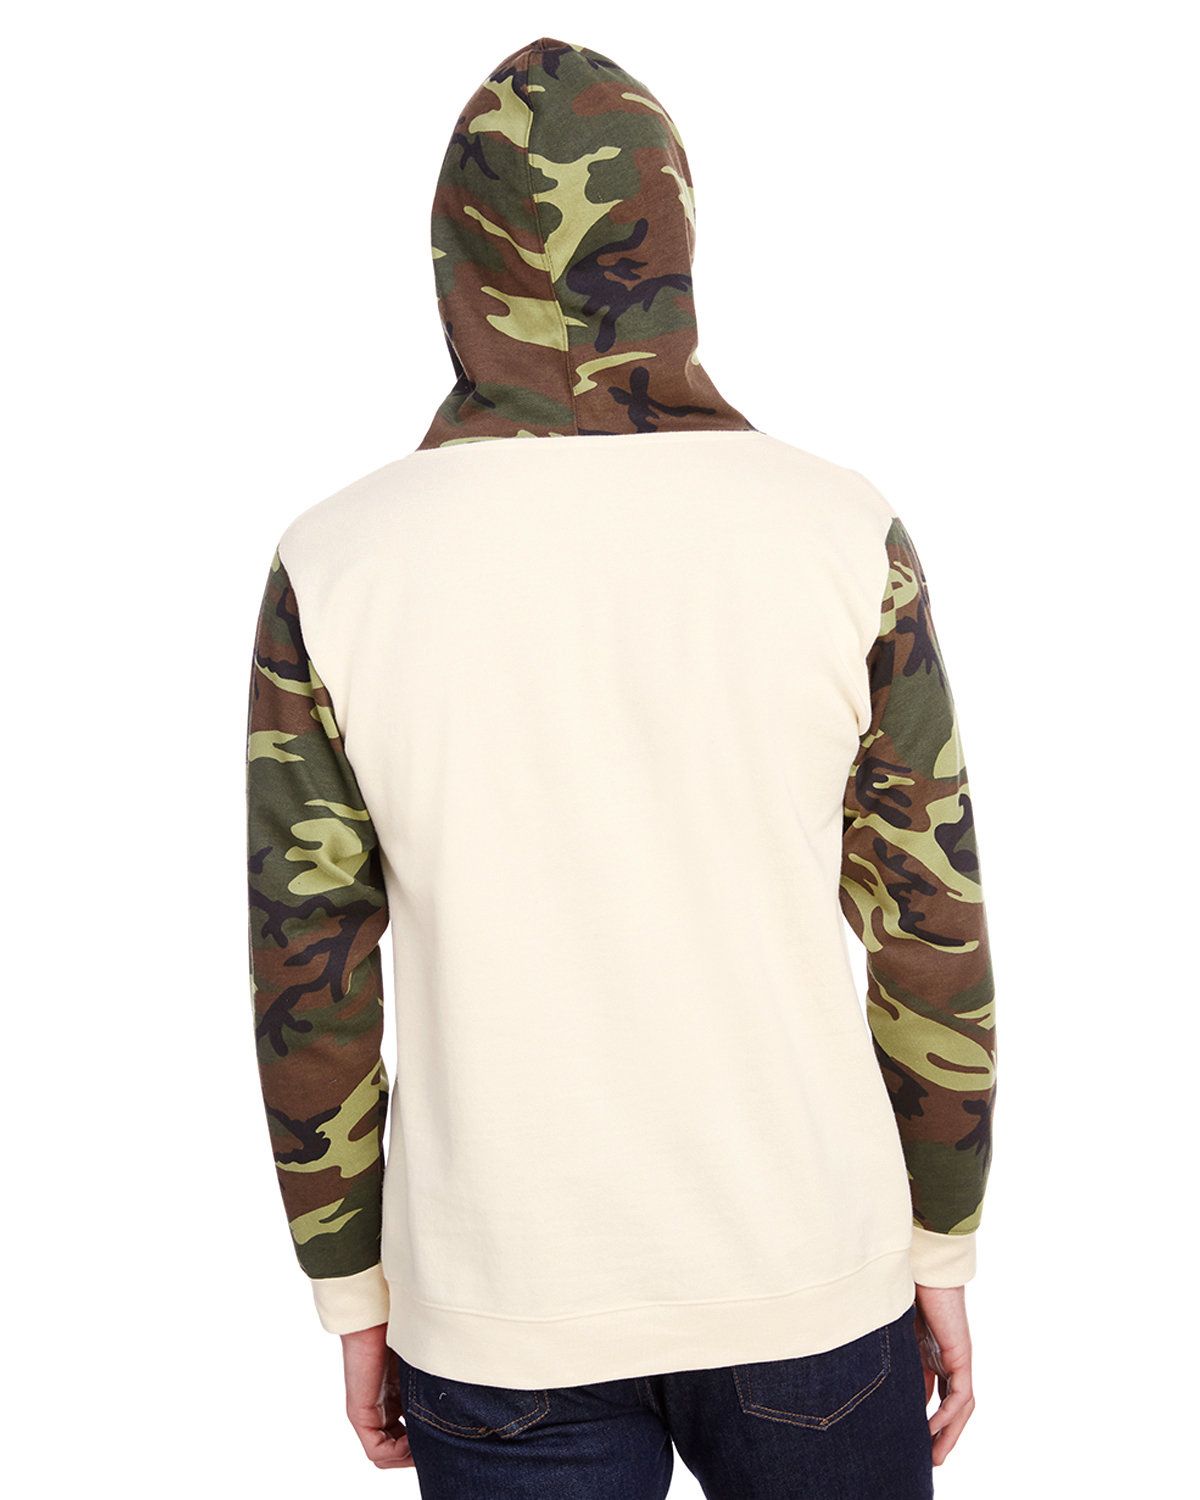 'Code Five 3967 Men's Fashion Camo Hooded Sweatshirt'